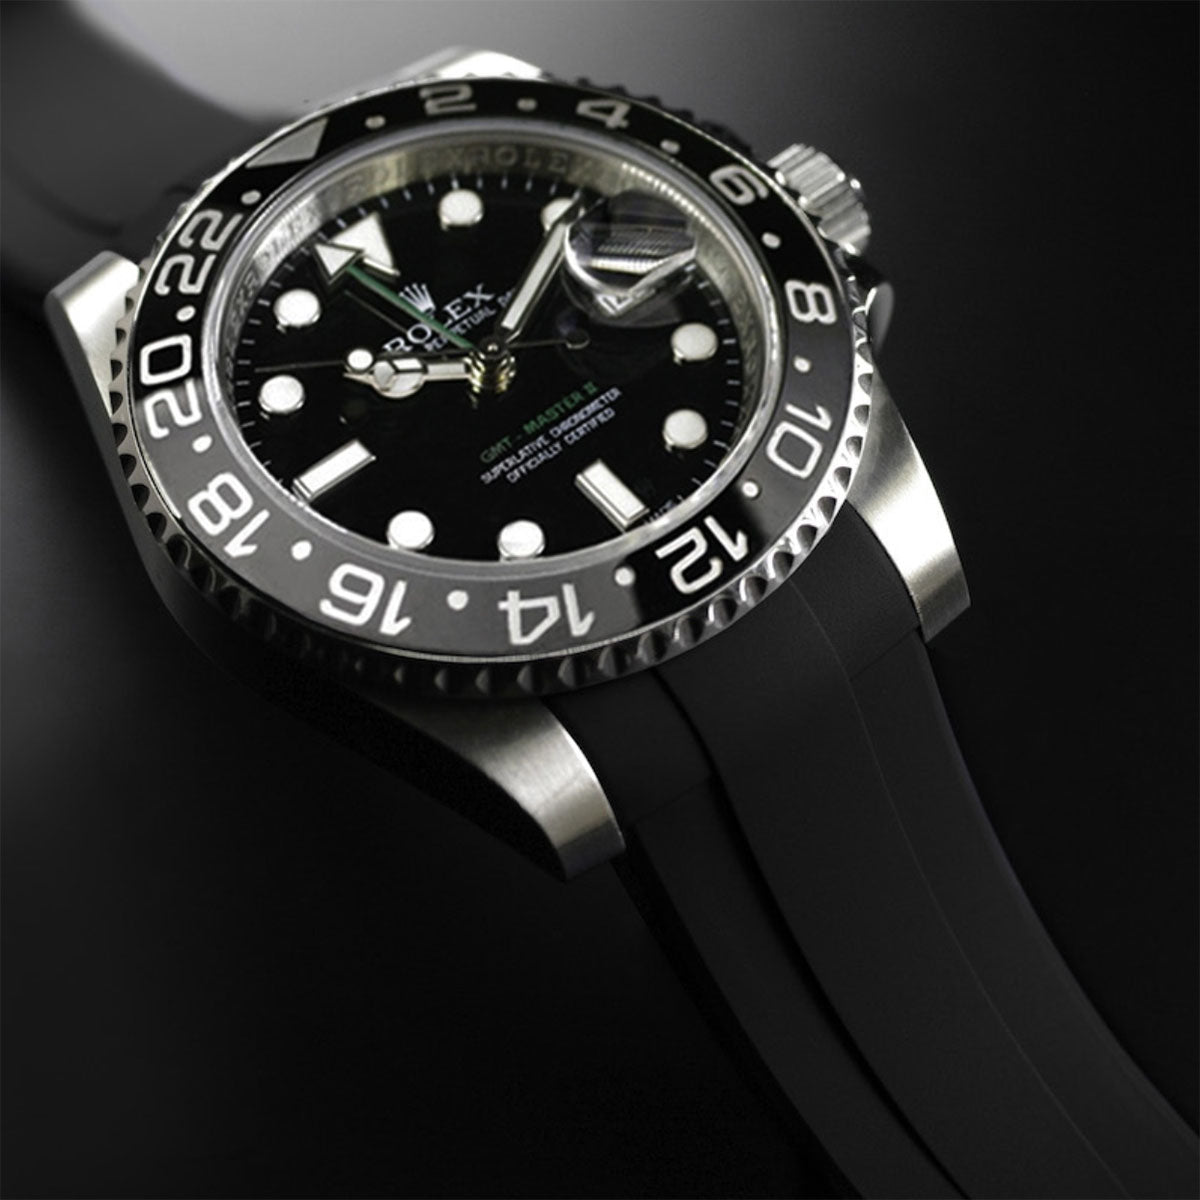 Rolex - Rubber B - Bracelet caoutchouc pour GMT Master II CERAMIC - Série boucle ardillon - watch band leather strap - ABP Concept -